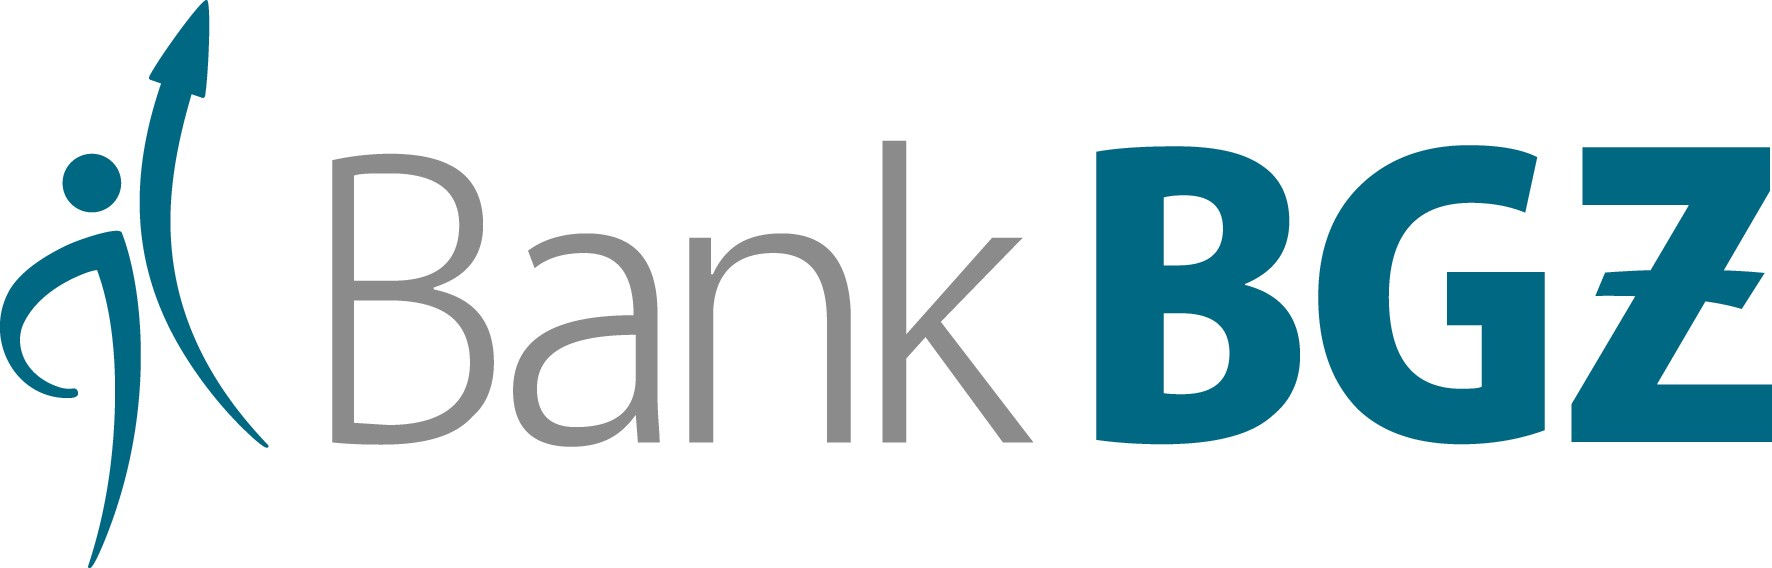 Bank BGZ Logo photo - 1